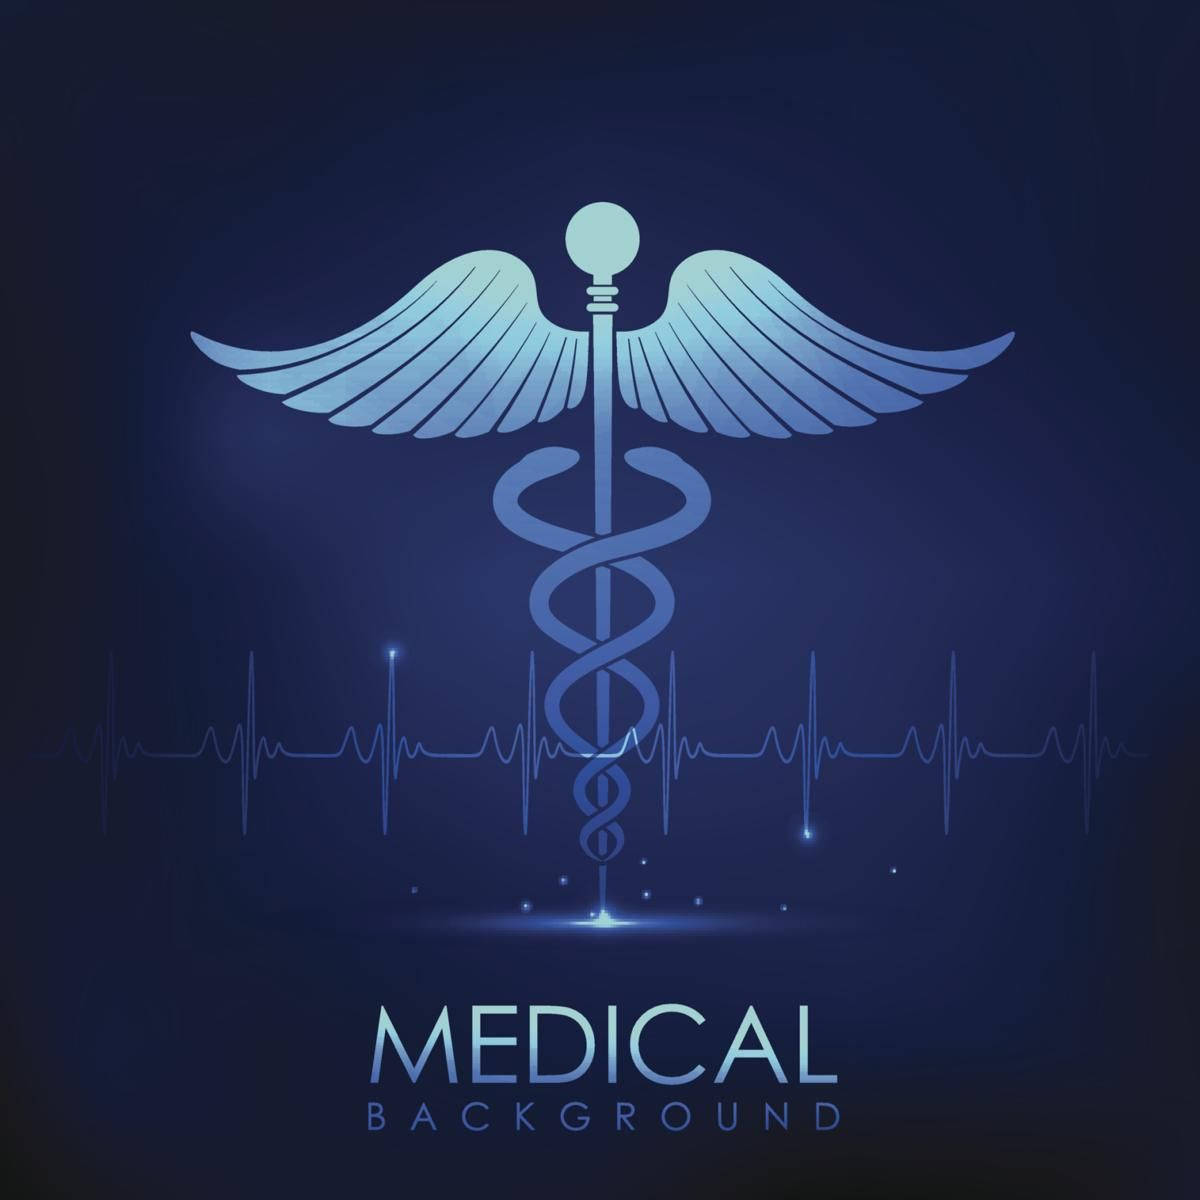 Blue And White Lifeline Medical Symbol Background